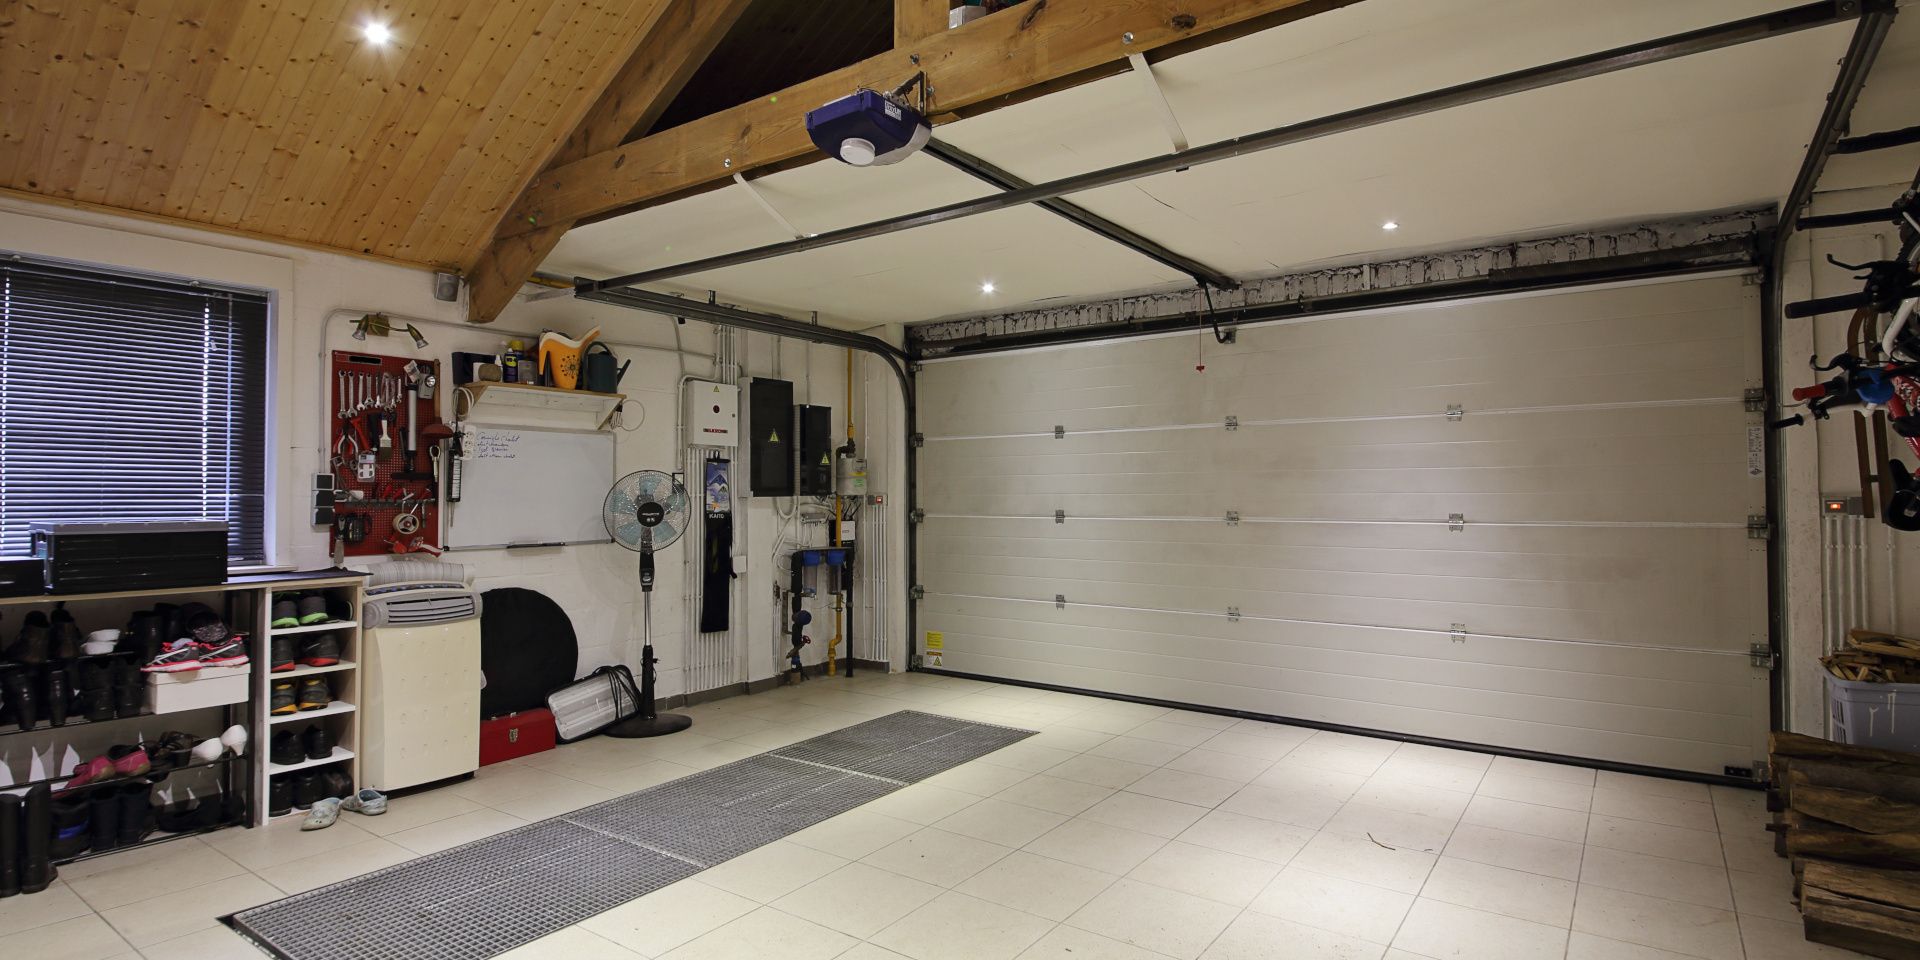 Garage door view from home interior